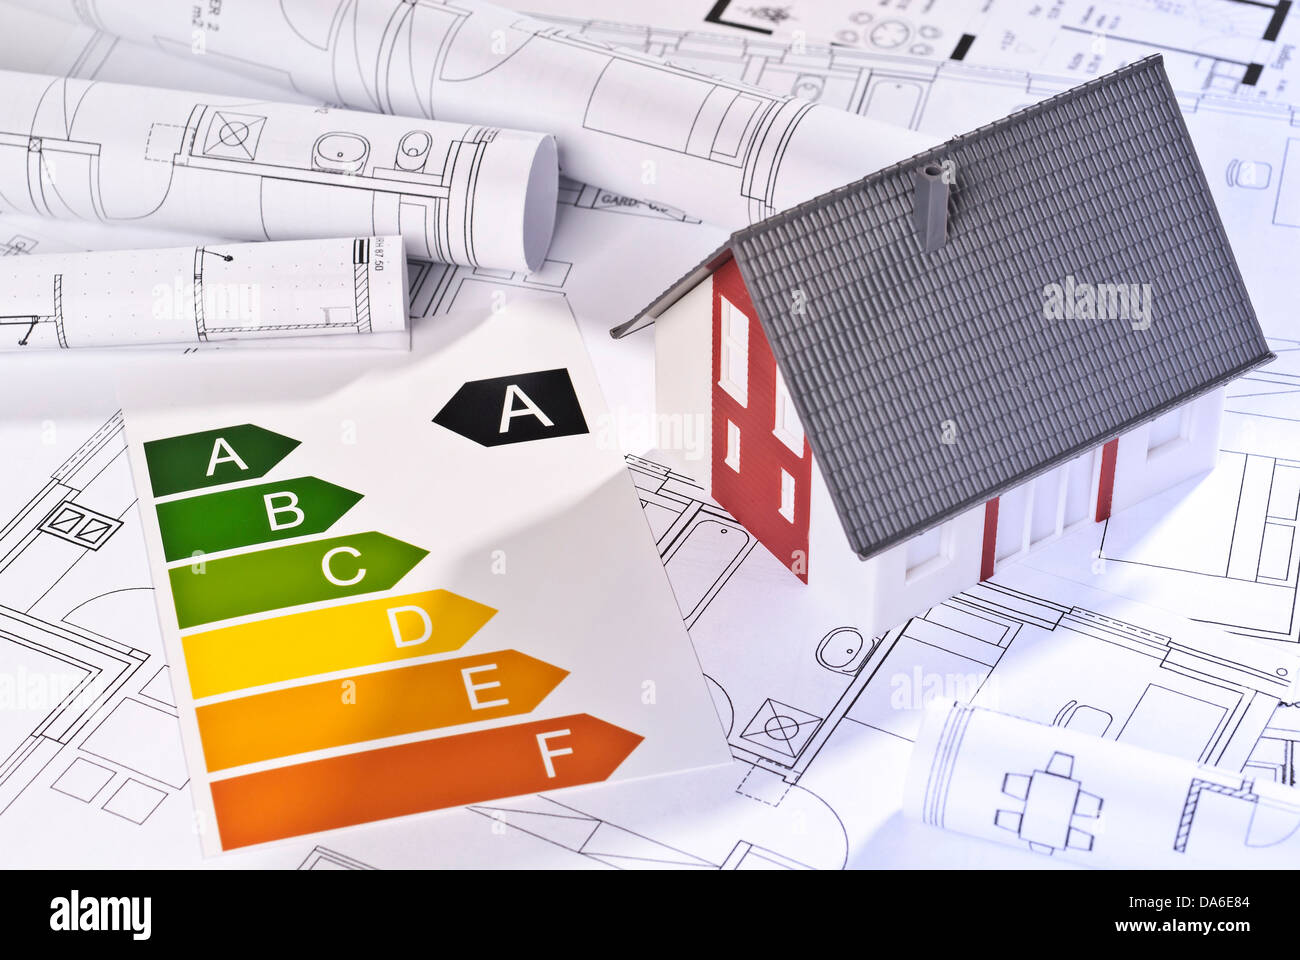 Efficienza energetica delle etichette, modello architetturale e blueprint. Foto Stock